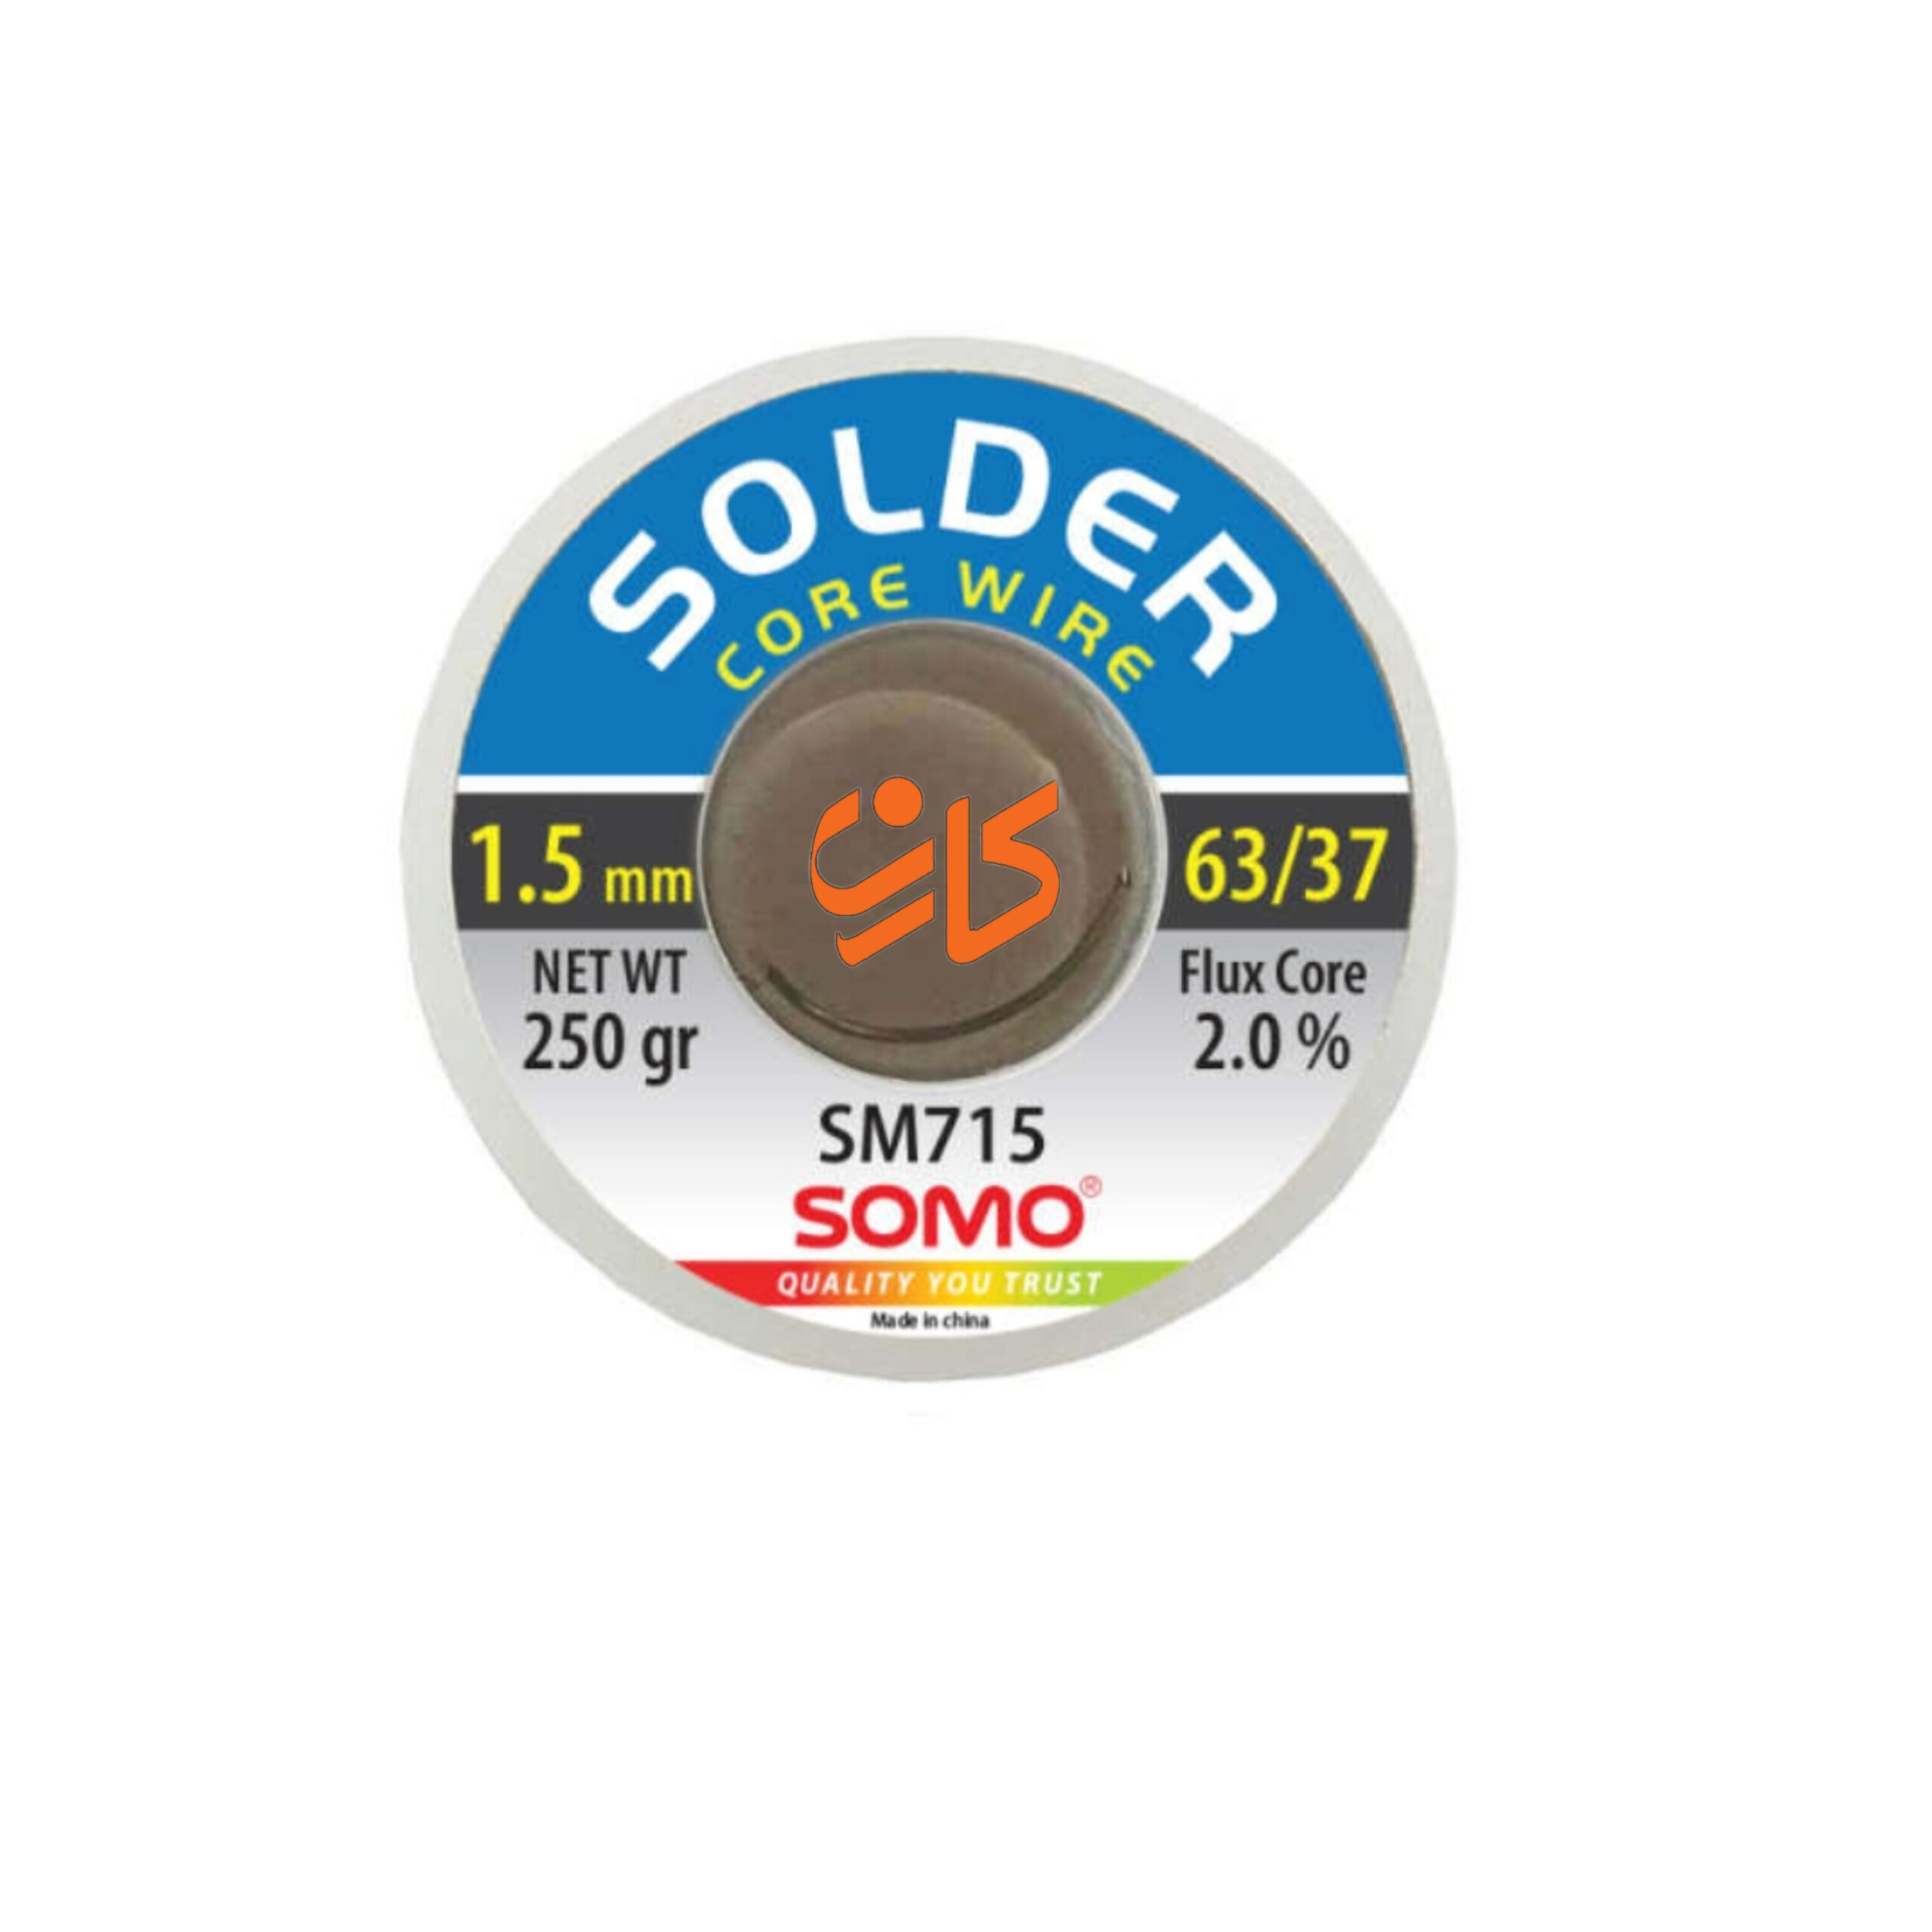 سیم لحیم سومو 1.5 میلیمتر 250 گرم مدل SOMO SM715